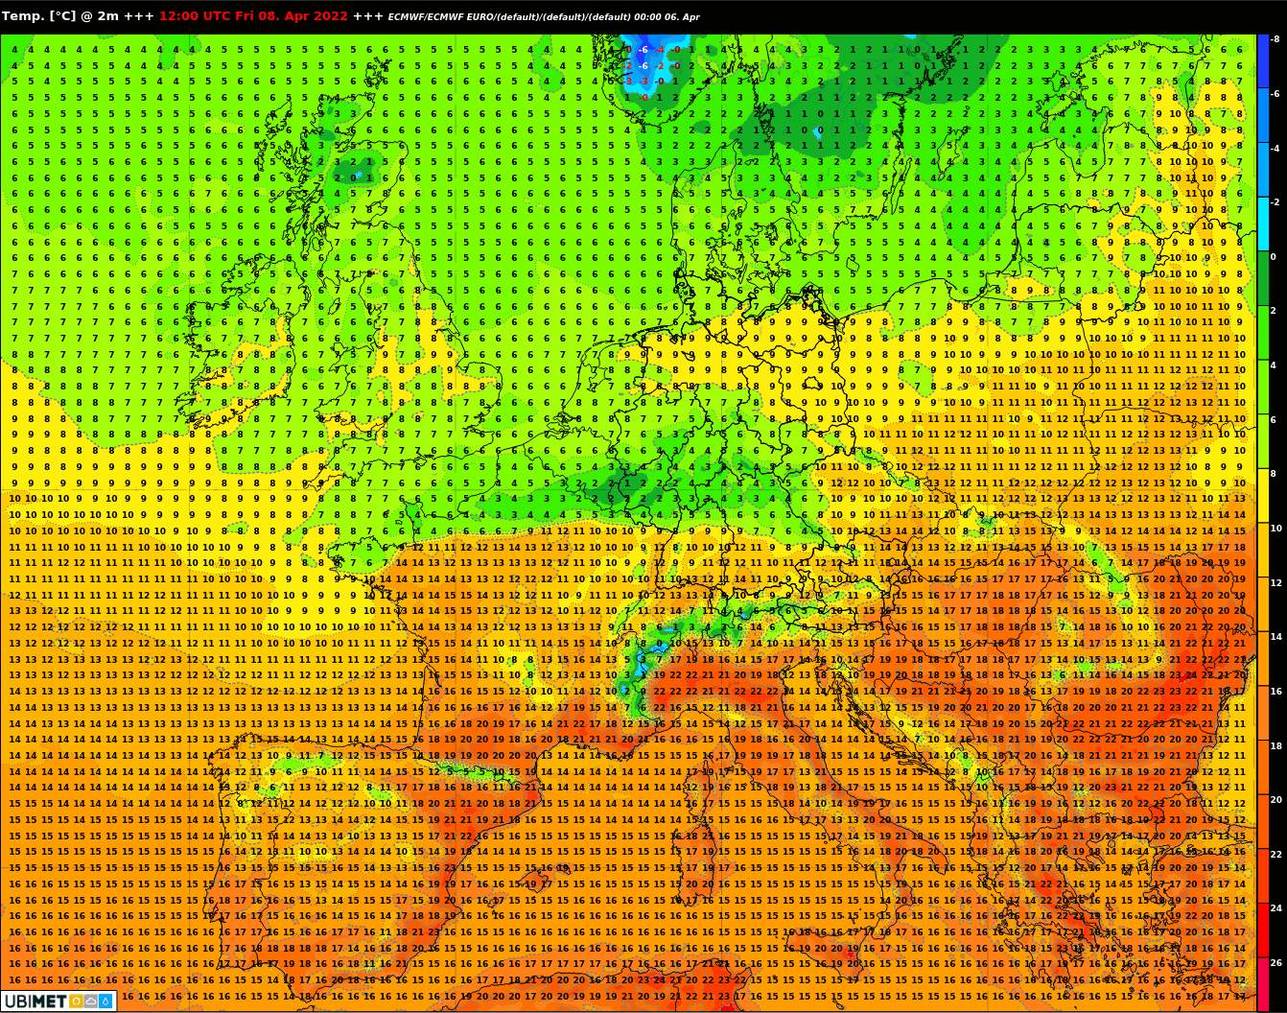 grosse Temperaturunterschiede zwischen Nordeuropa und dem Mittelmeerraum, hier als Beispiel der kommende Freitag 8. April 